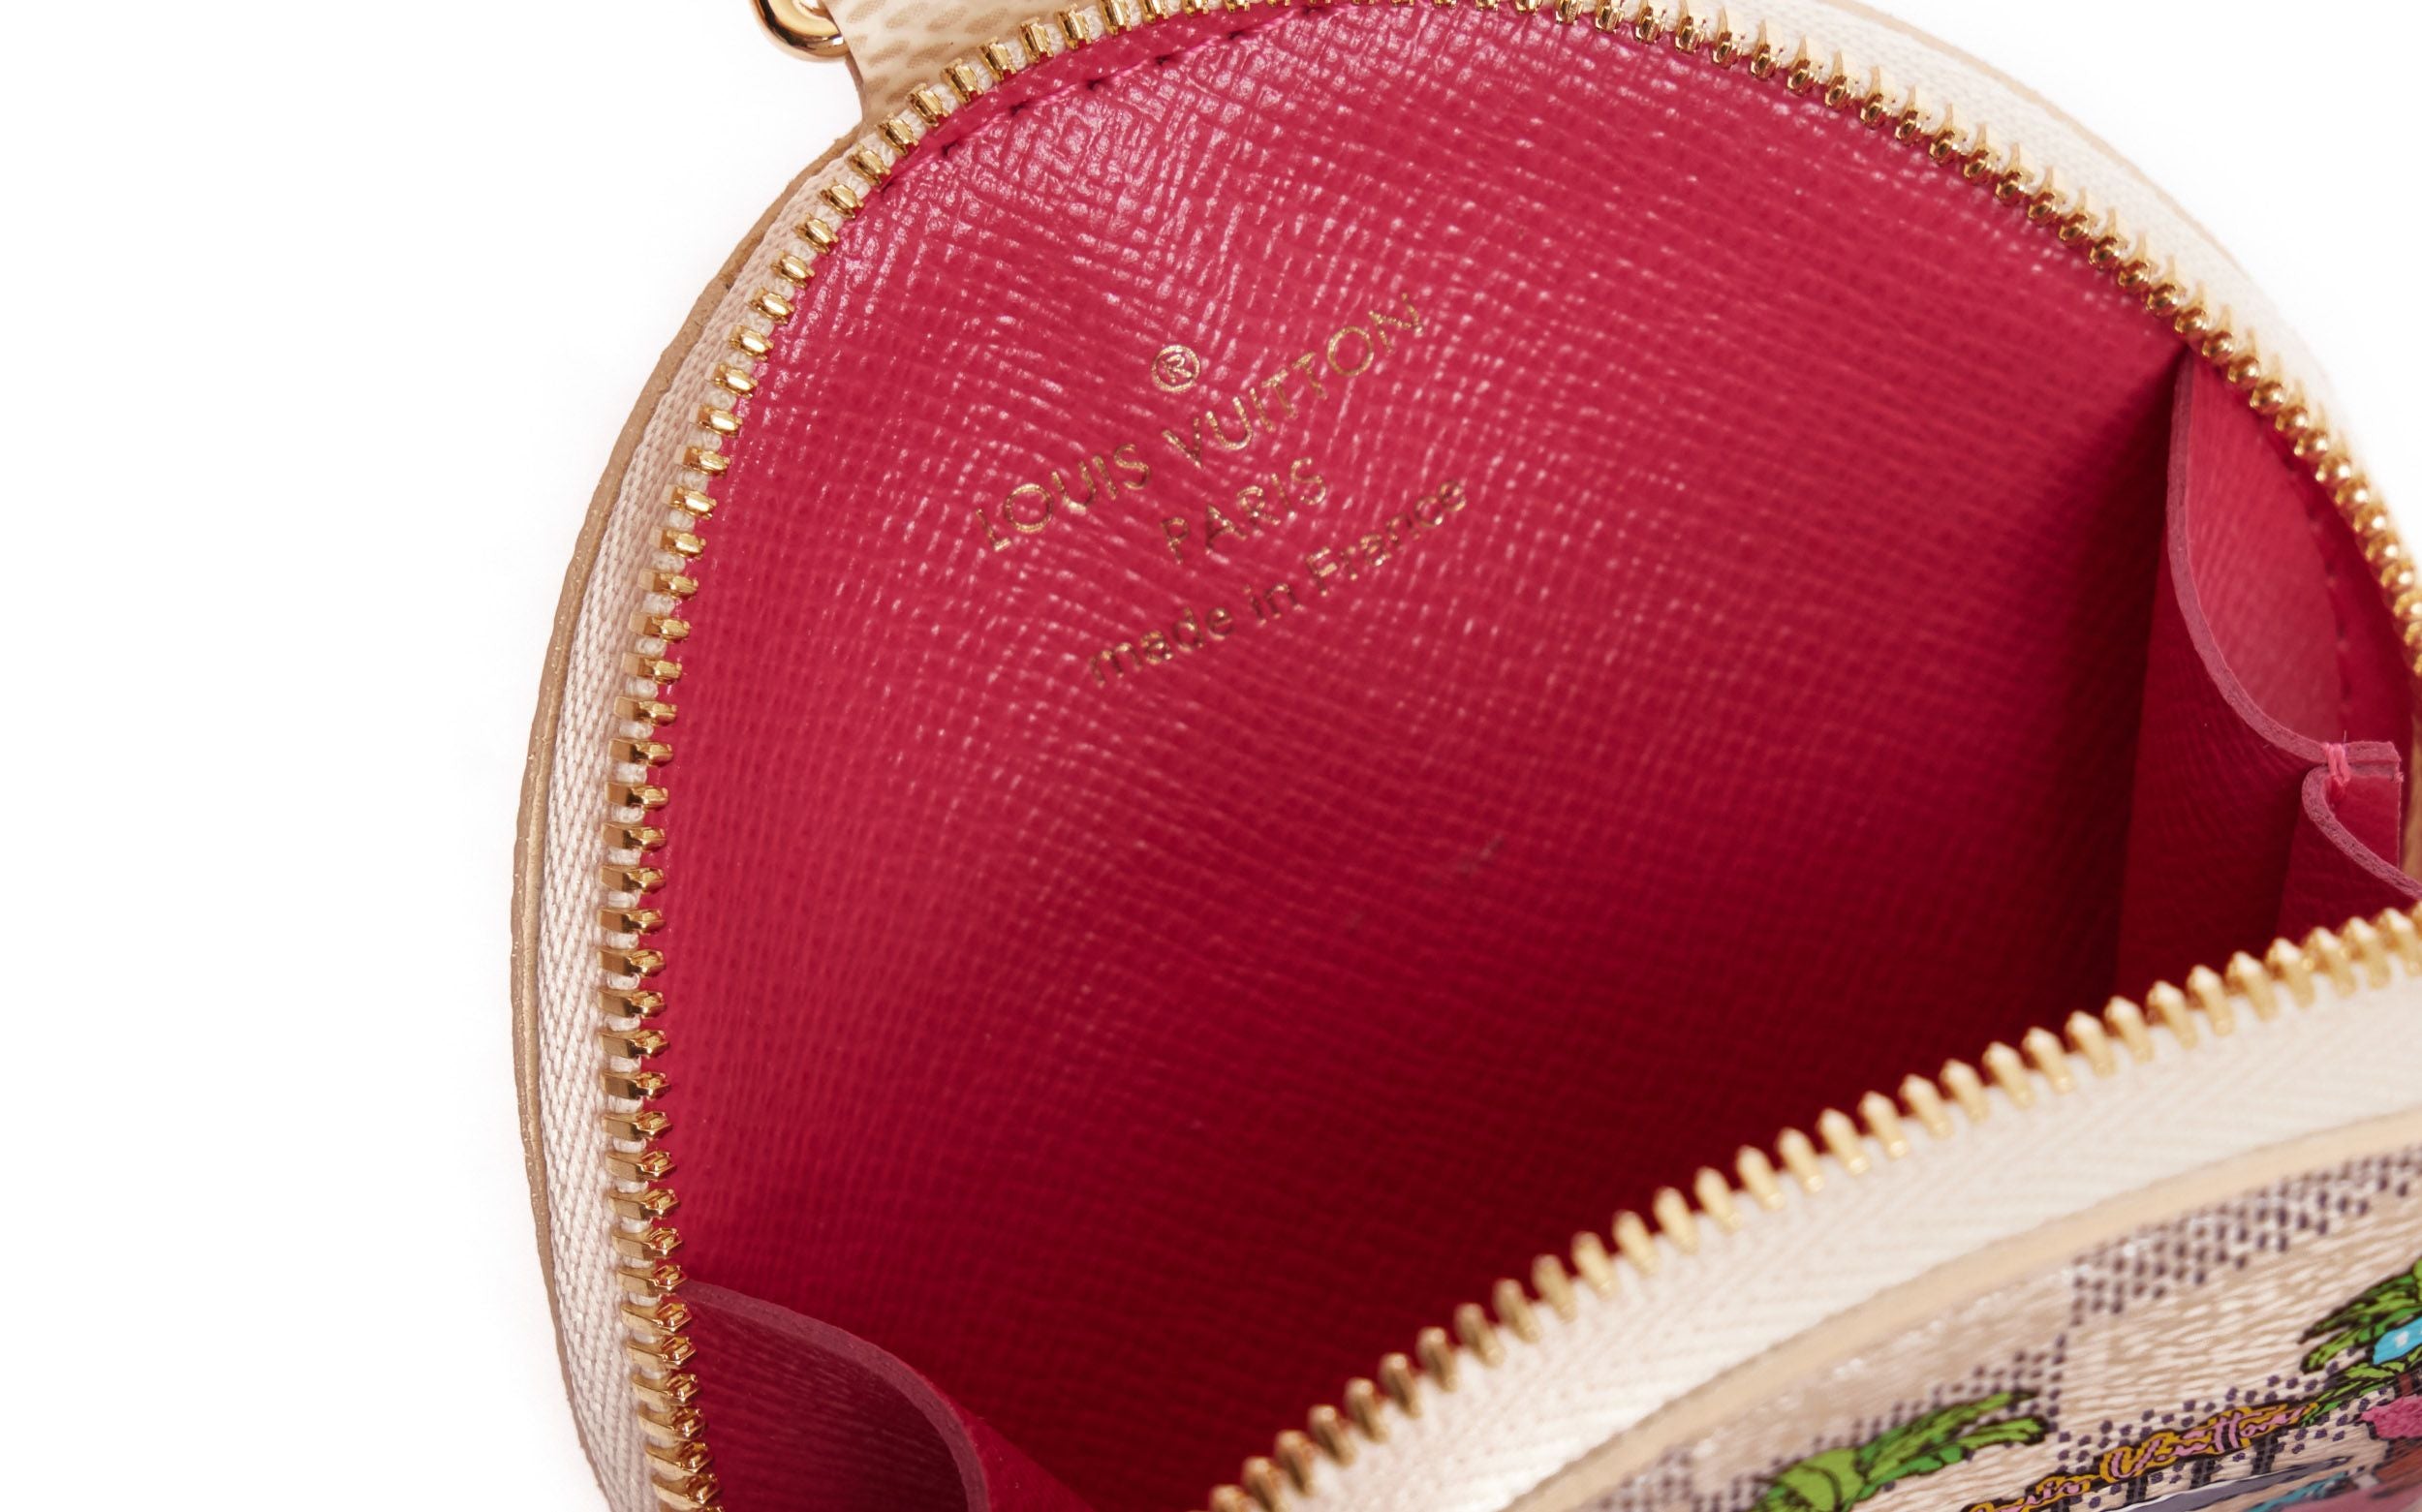 Louis Vuitton Damier Azur Christmas Round Coin Purse Bag Charm